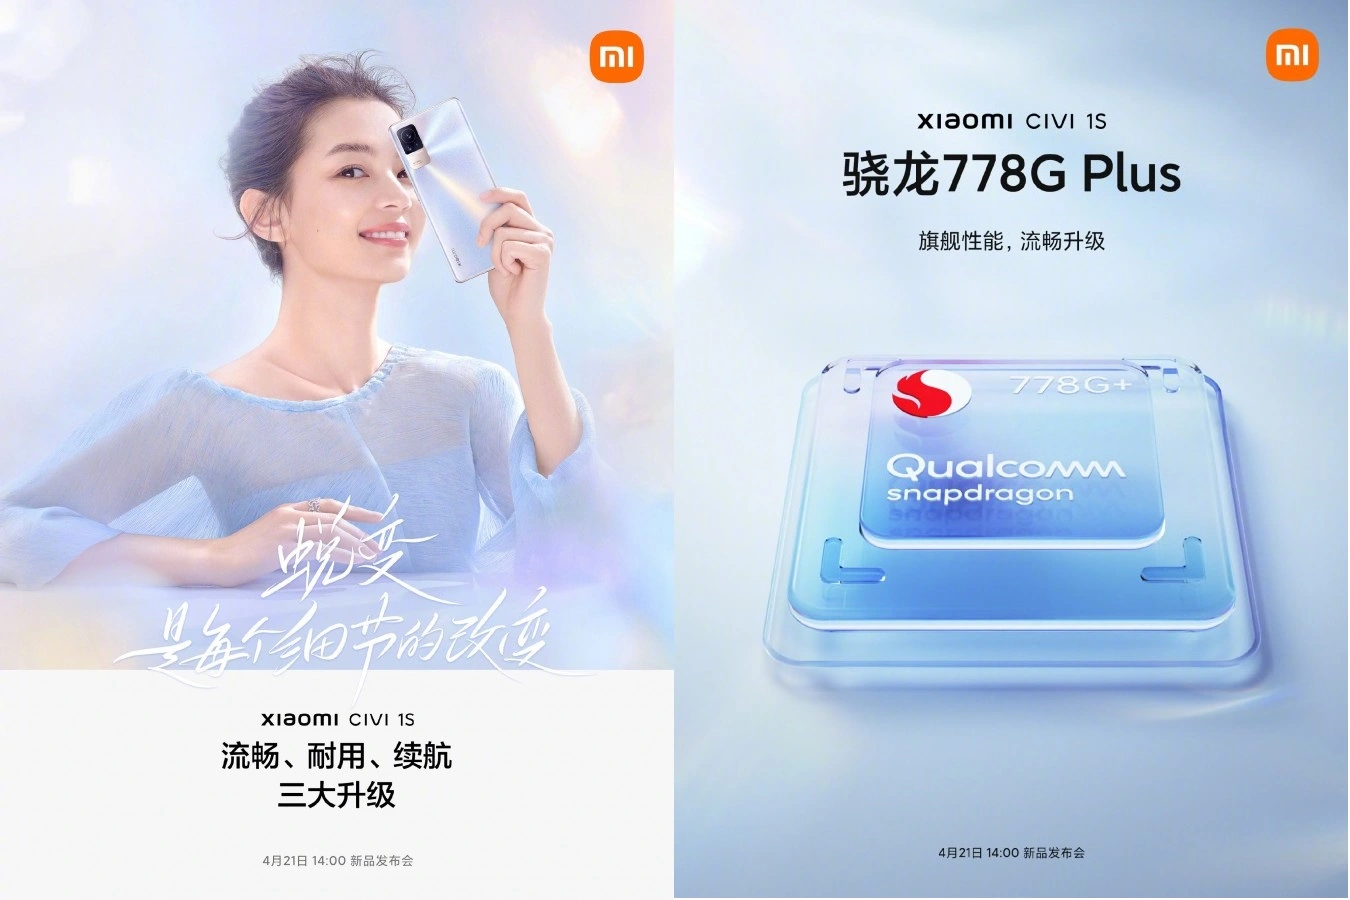 Xiaomi Civi 1s sarà più liscio e resistente del predecessore